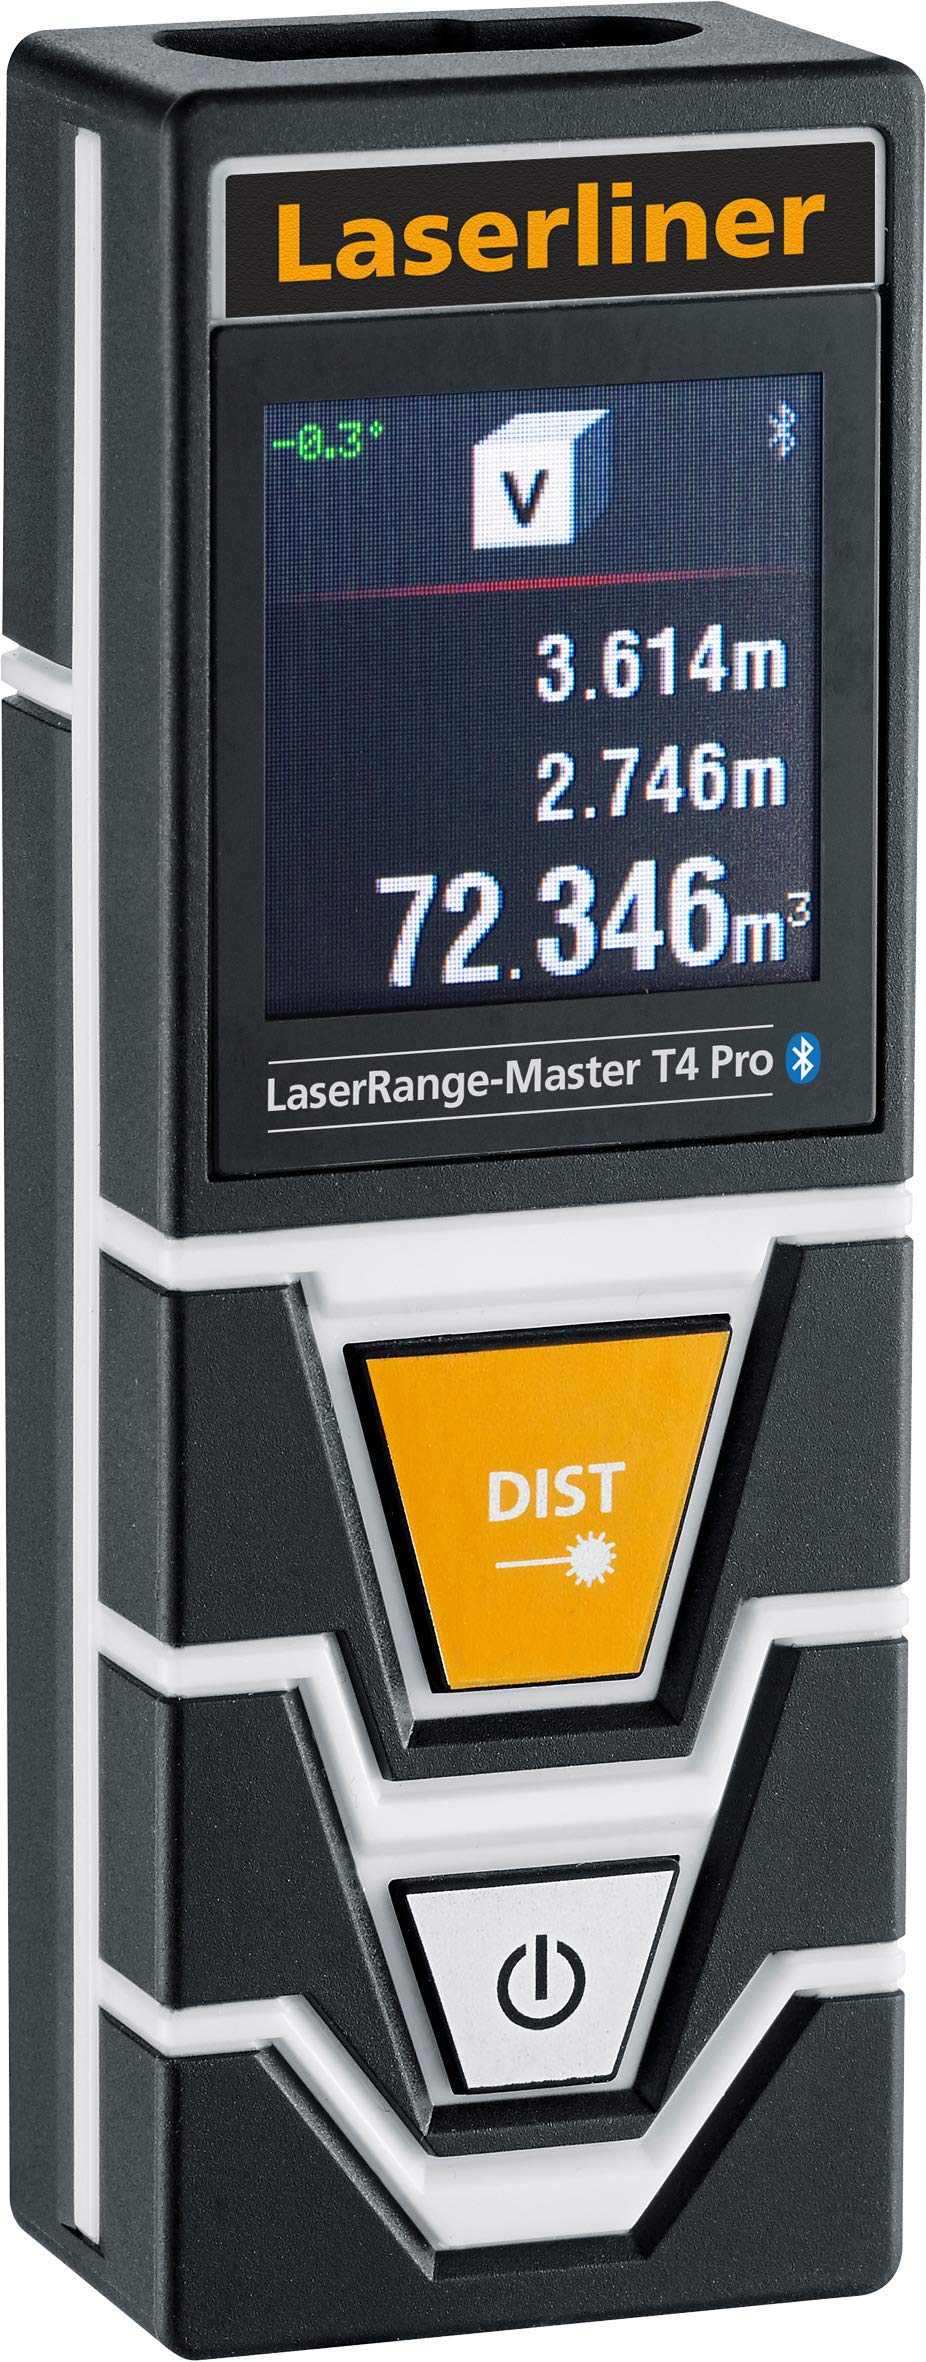 LASERLINER - LaserRange-Master T4 Pro - Entfernungsmesser - Präzise Messungen - Längen, Flächen - Winkelmessung - Reichweite 40m - Touchscreen - Bluetooth - Stativgewinde - Einfach zu bedienen